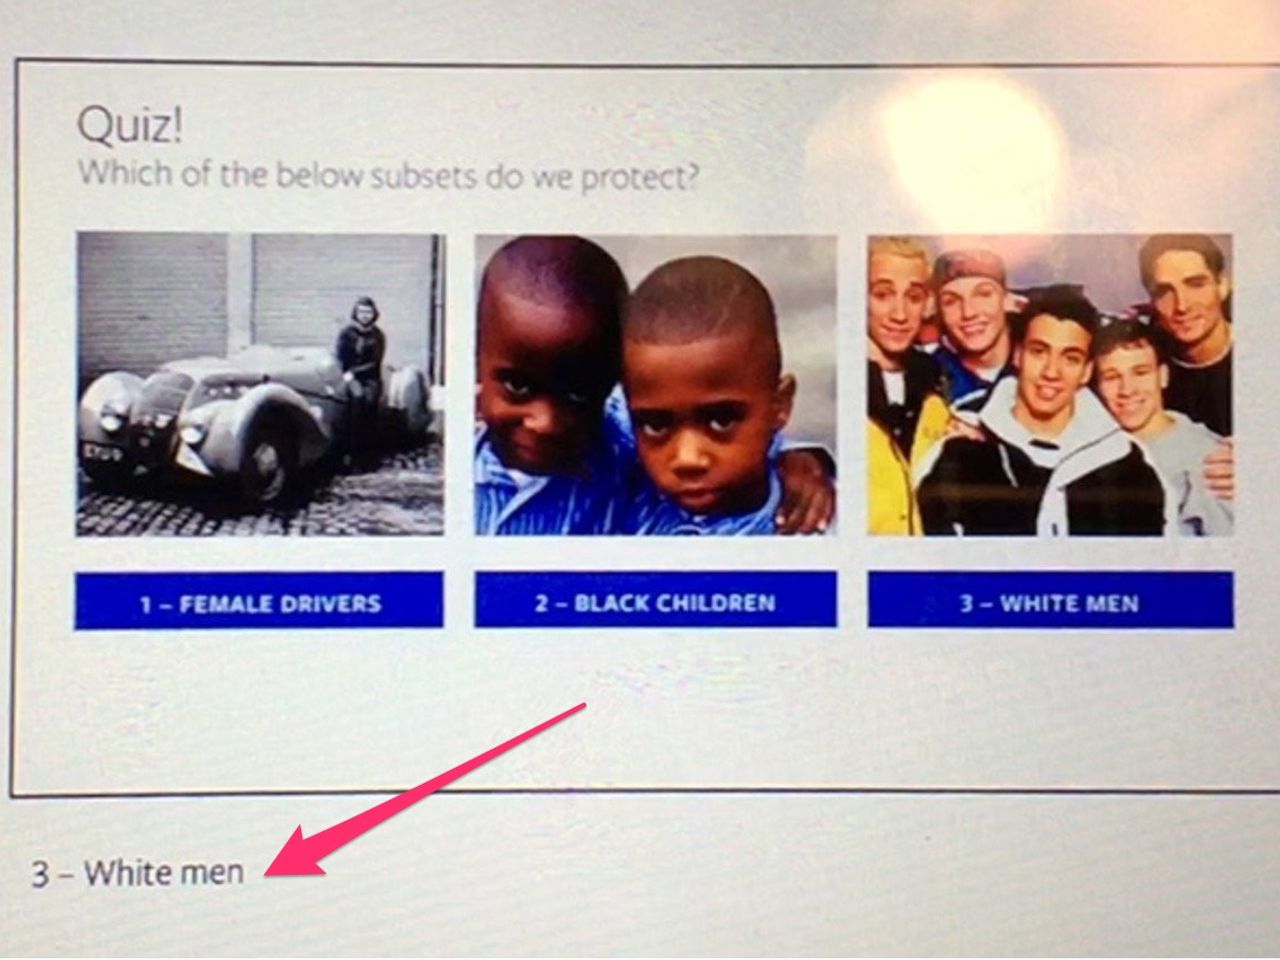 ｢保護｣対象を選ばせるFacebookの社内教育用スライド